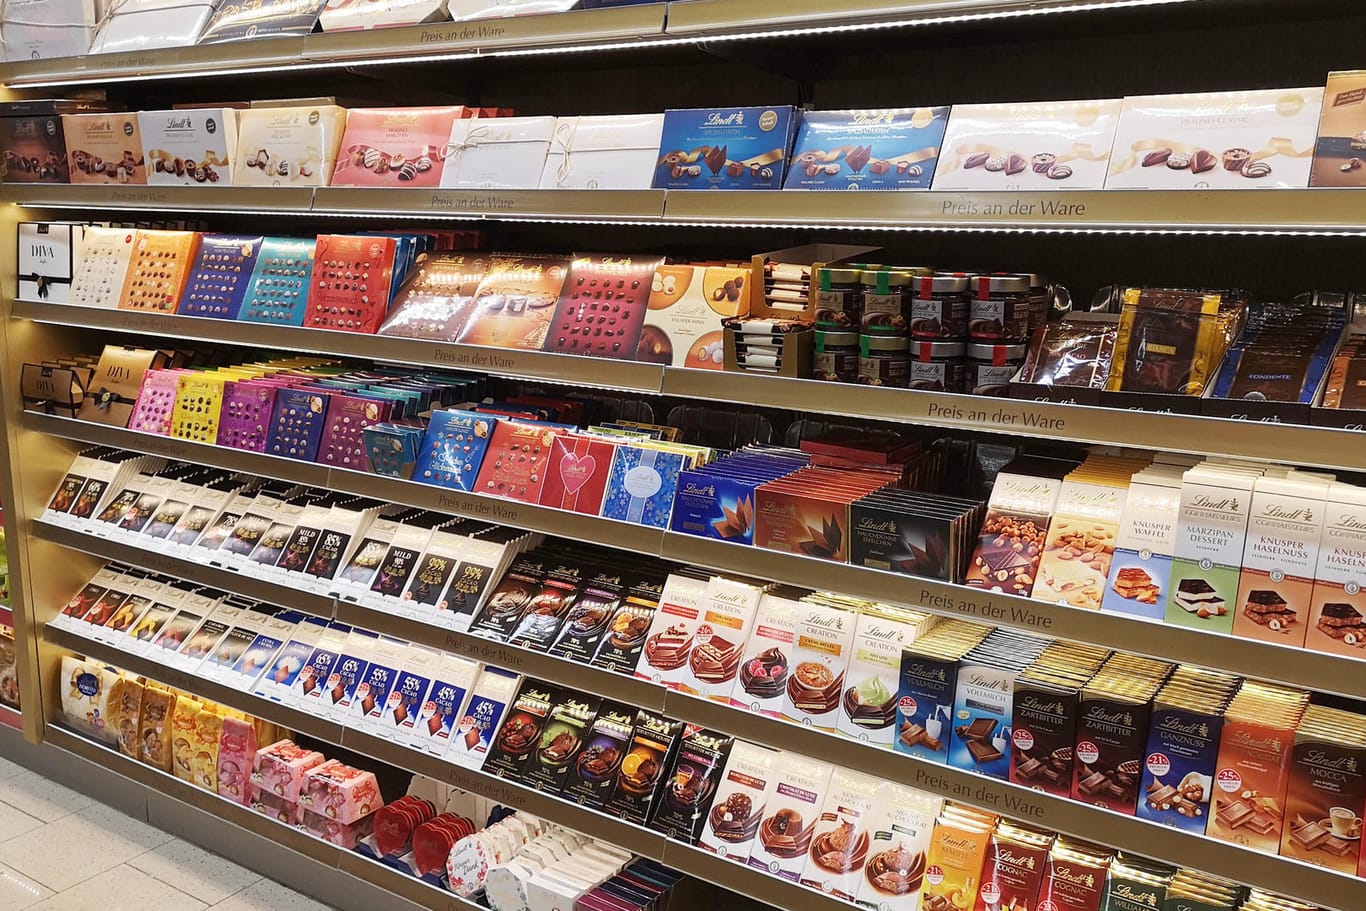 Schokolade im Supermarkt: In diesem Jahr kommen zwei Sorten von Lindor zeitweise hinzu.